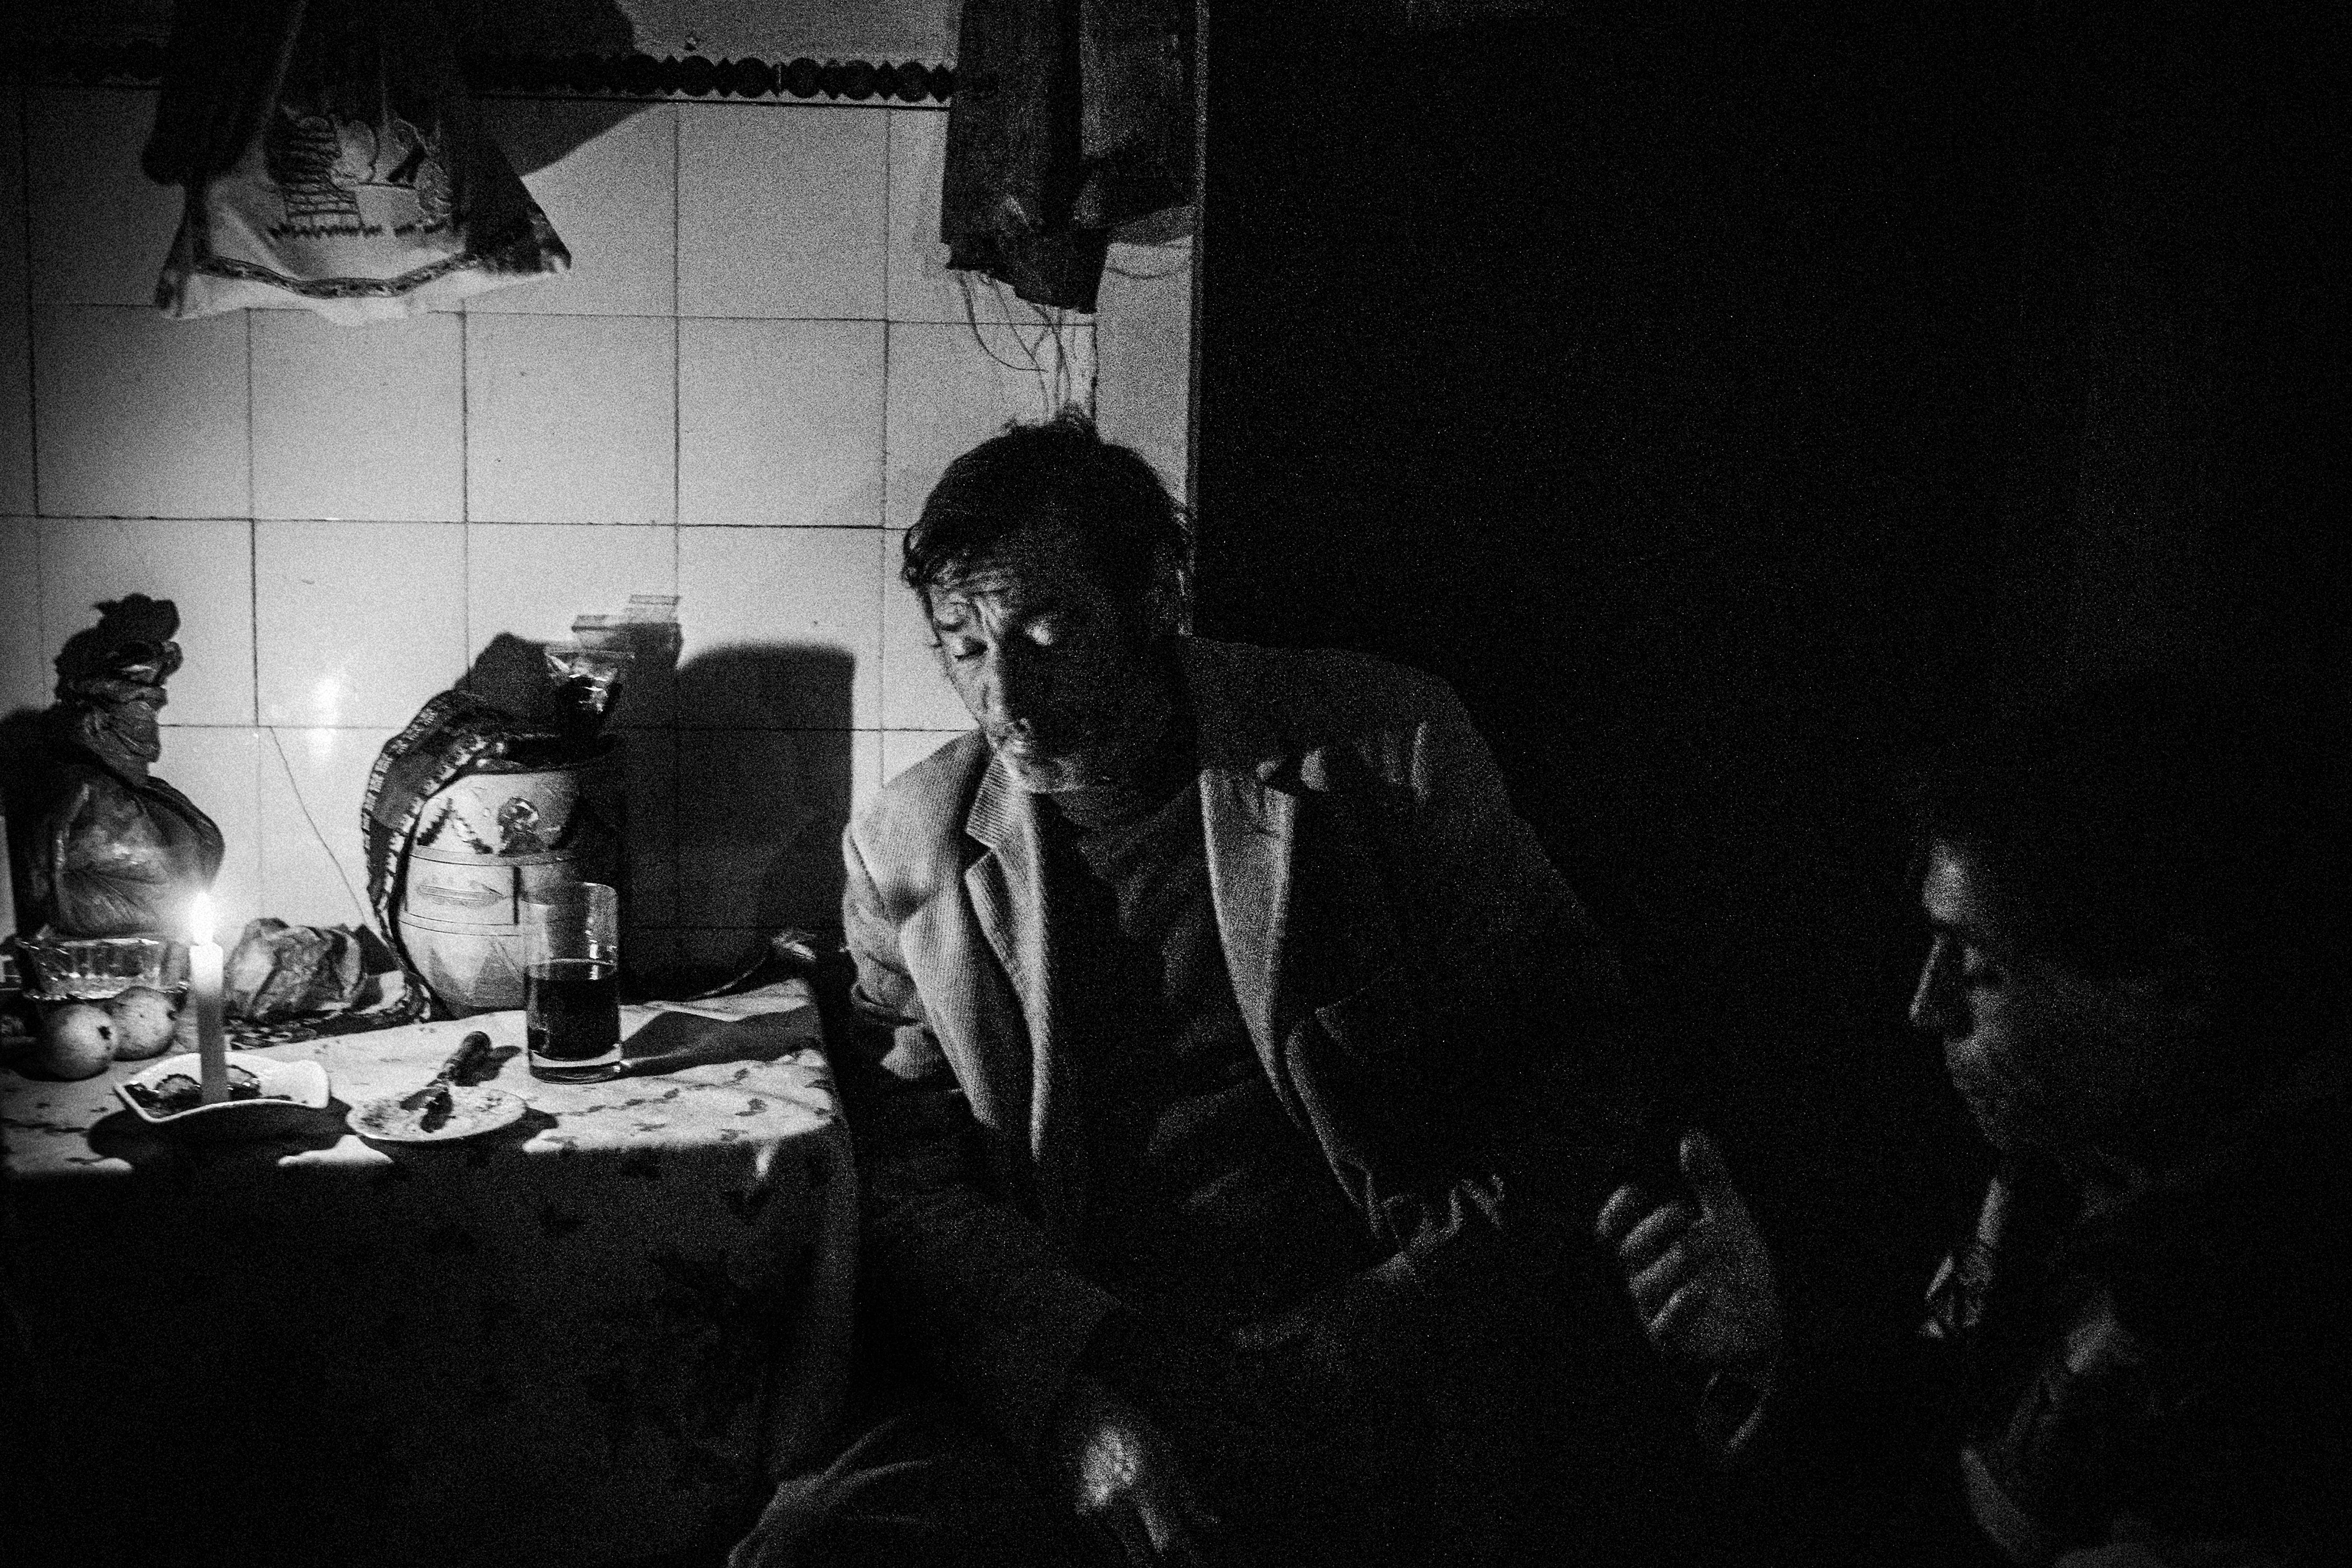 11 de marzo de 2014. Carlos y Joao comparten comida en una casa abandonada que encontraron en un viejo pueblo que ahora es su hogar. Vivieron allí durante más de 3 años sin ningún ingreso.